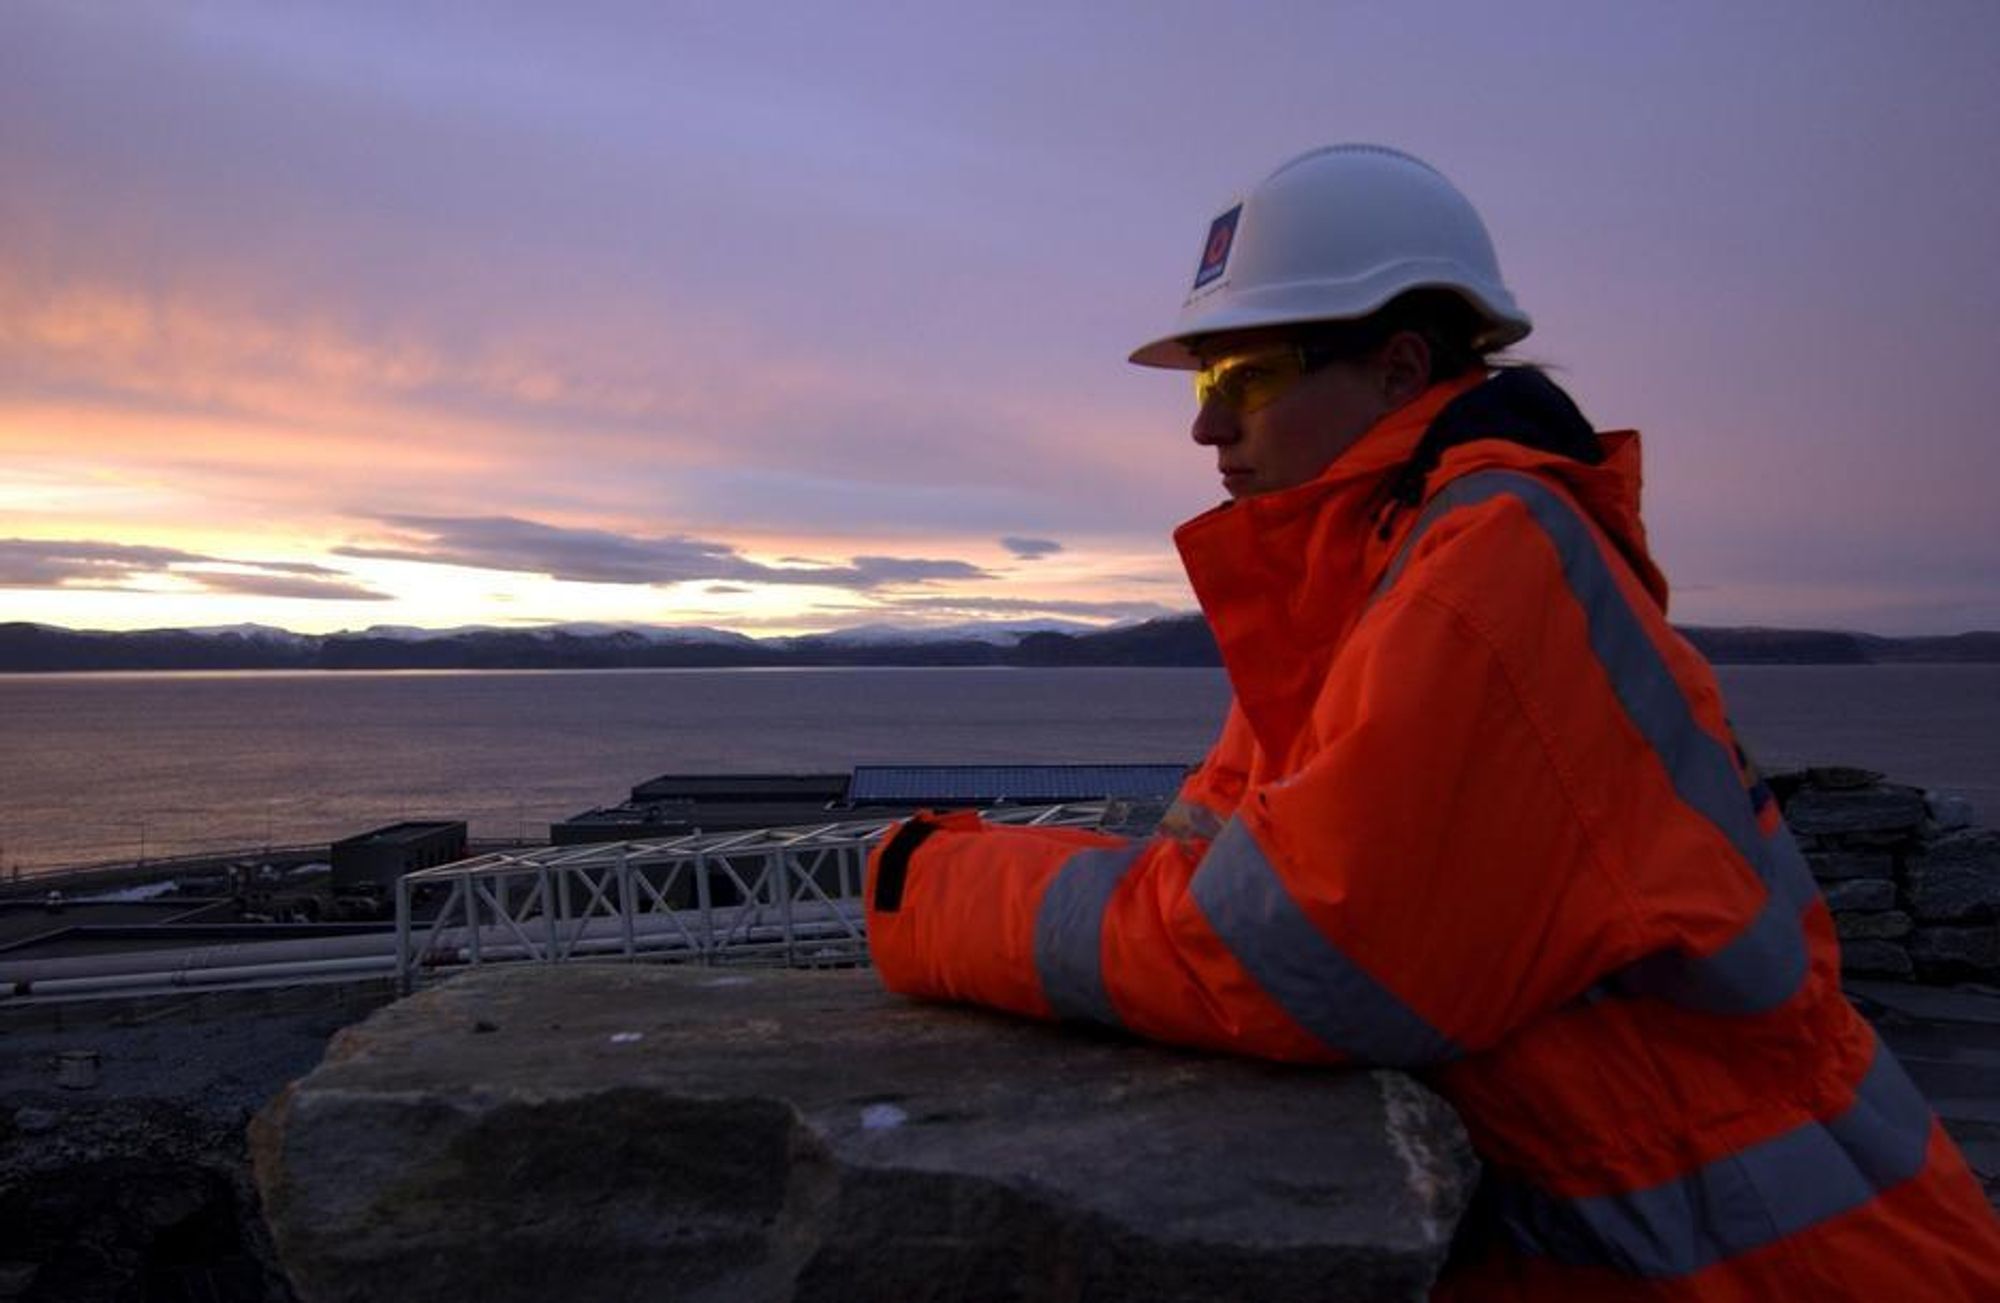 Jobb Statoil ingeniører drømmer om midnattsol og storslått natur.  Nyutdannede har muligheten for å starte sine karrierer i Statoil. Antallet traineer dobles til 50.